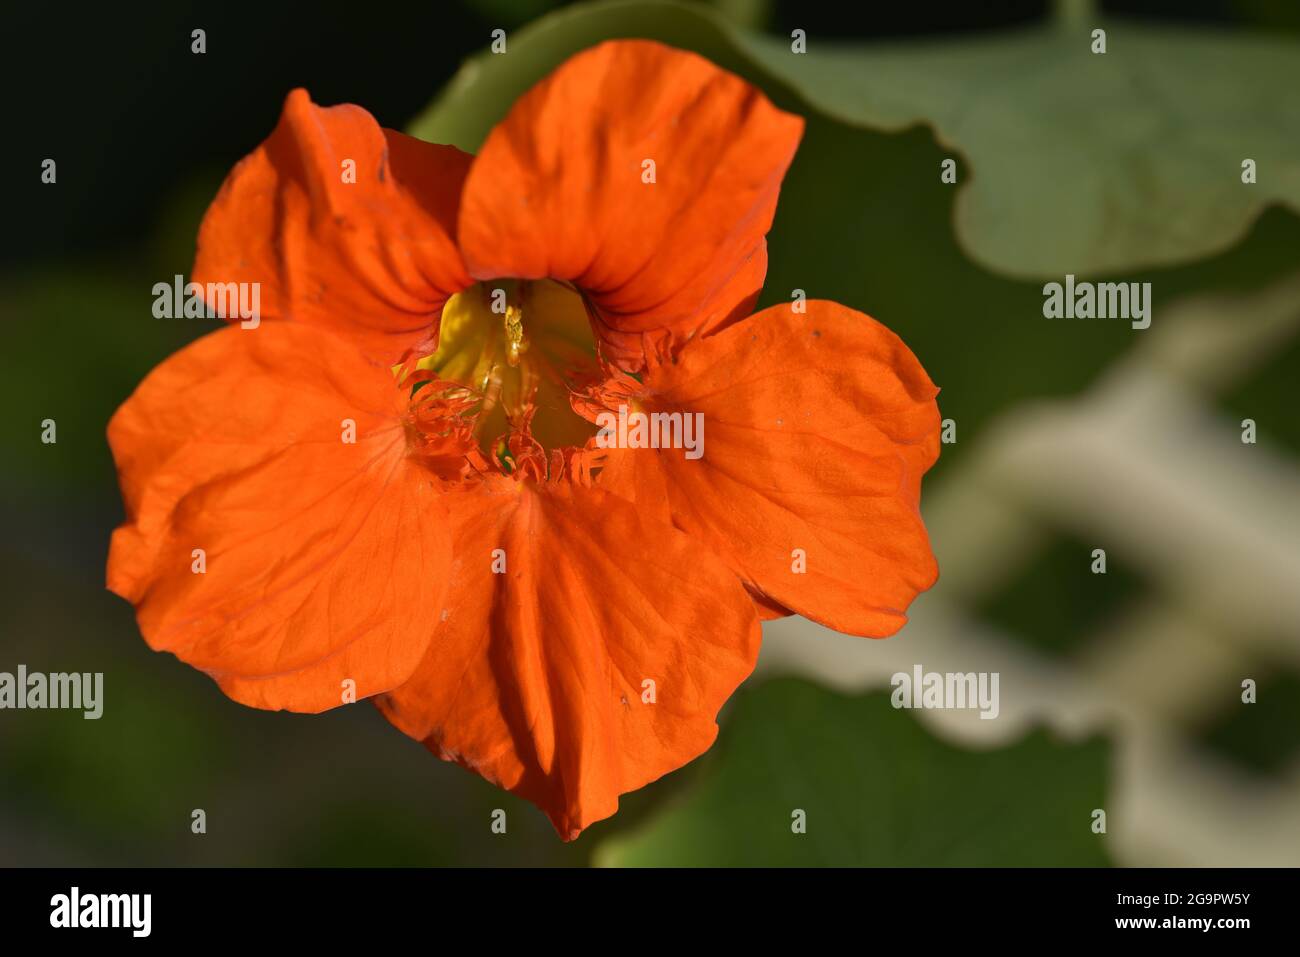 Sunlit Close-Up of Orange Nasturtium (Tropaeloum majus) Flower Head against Blurred Trellis Background in Summer in the UK Stock Photo